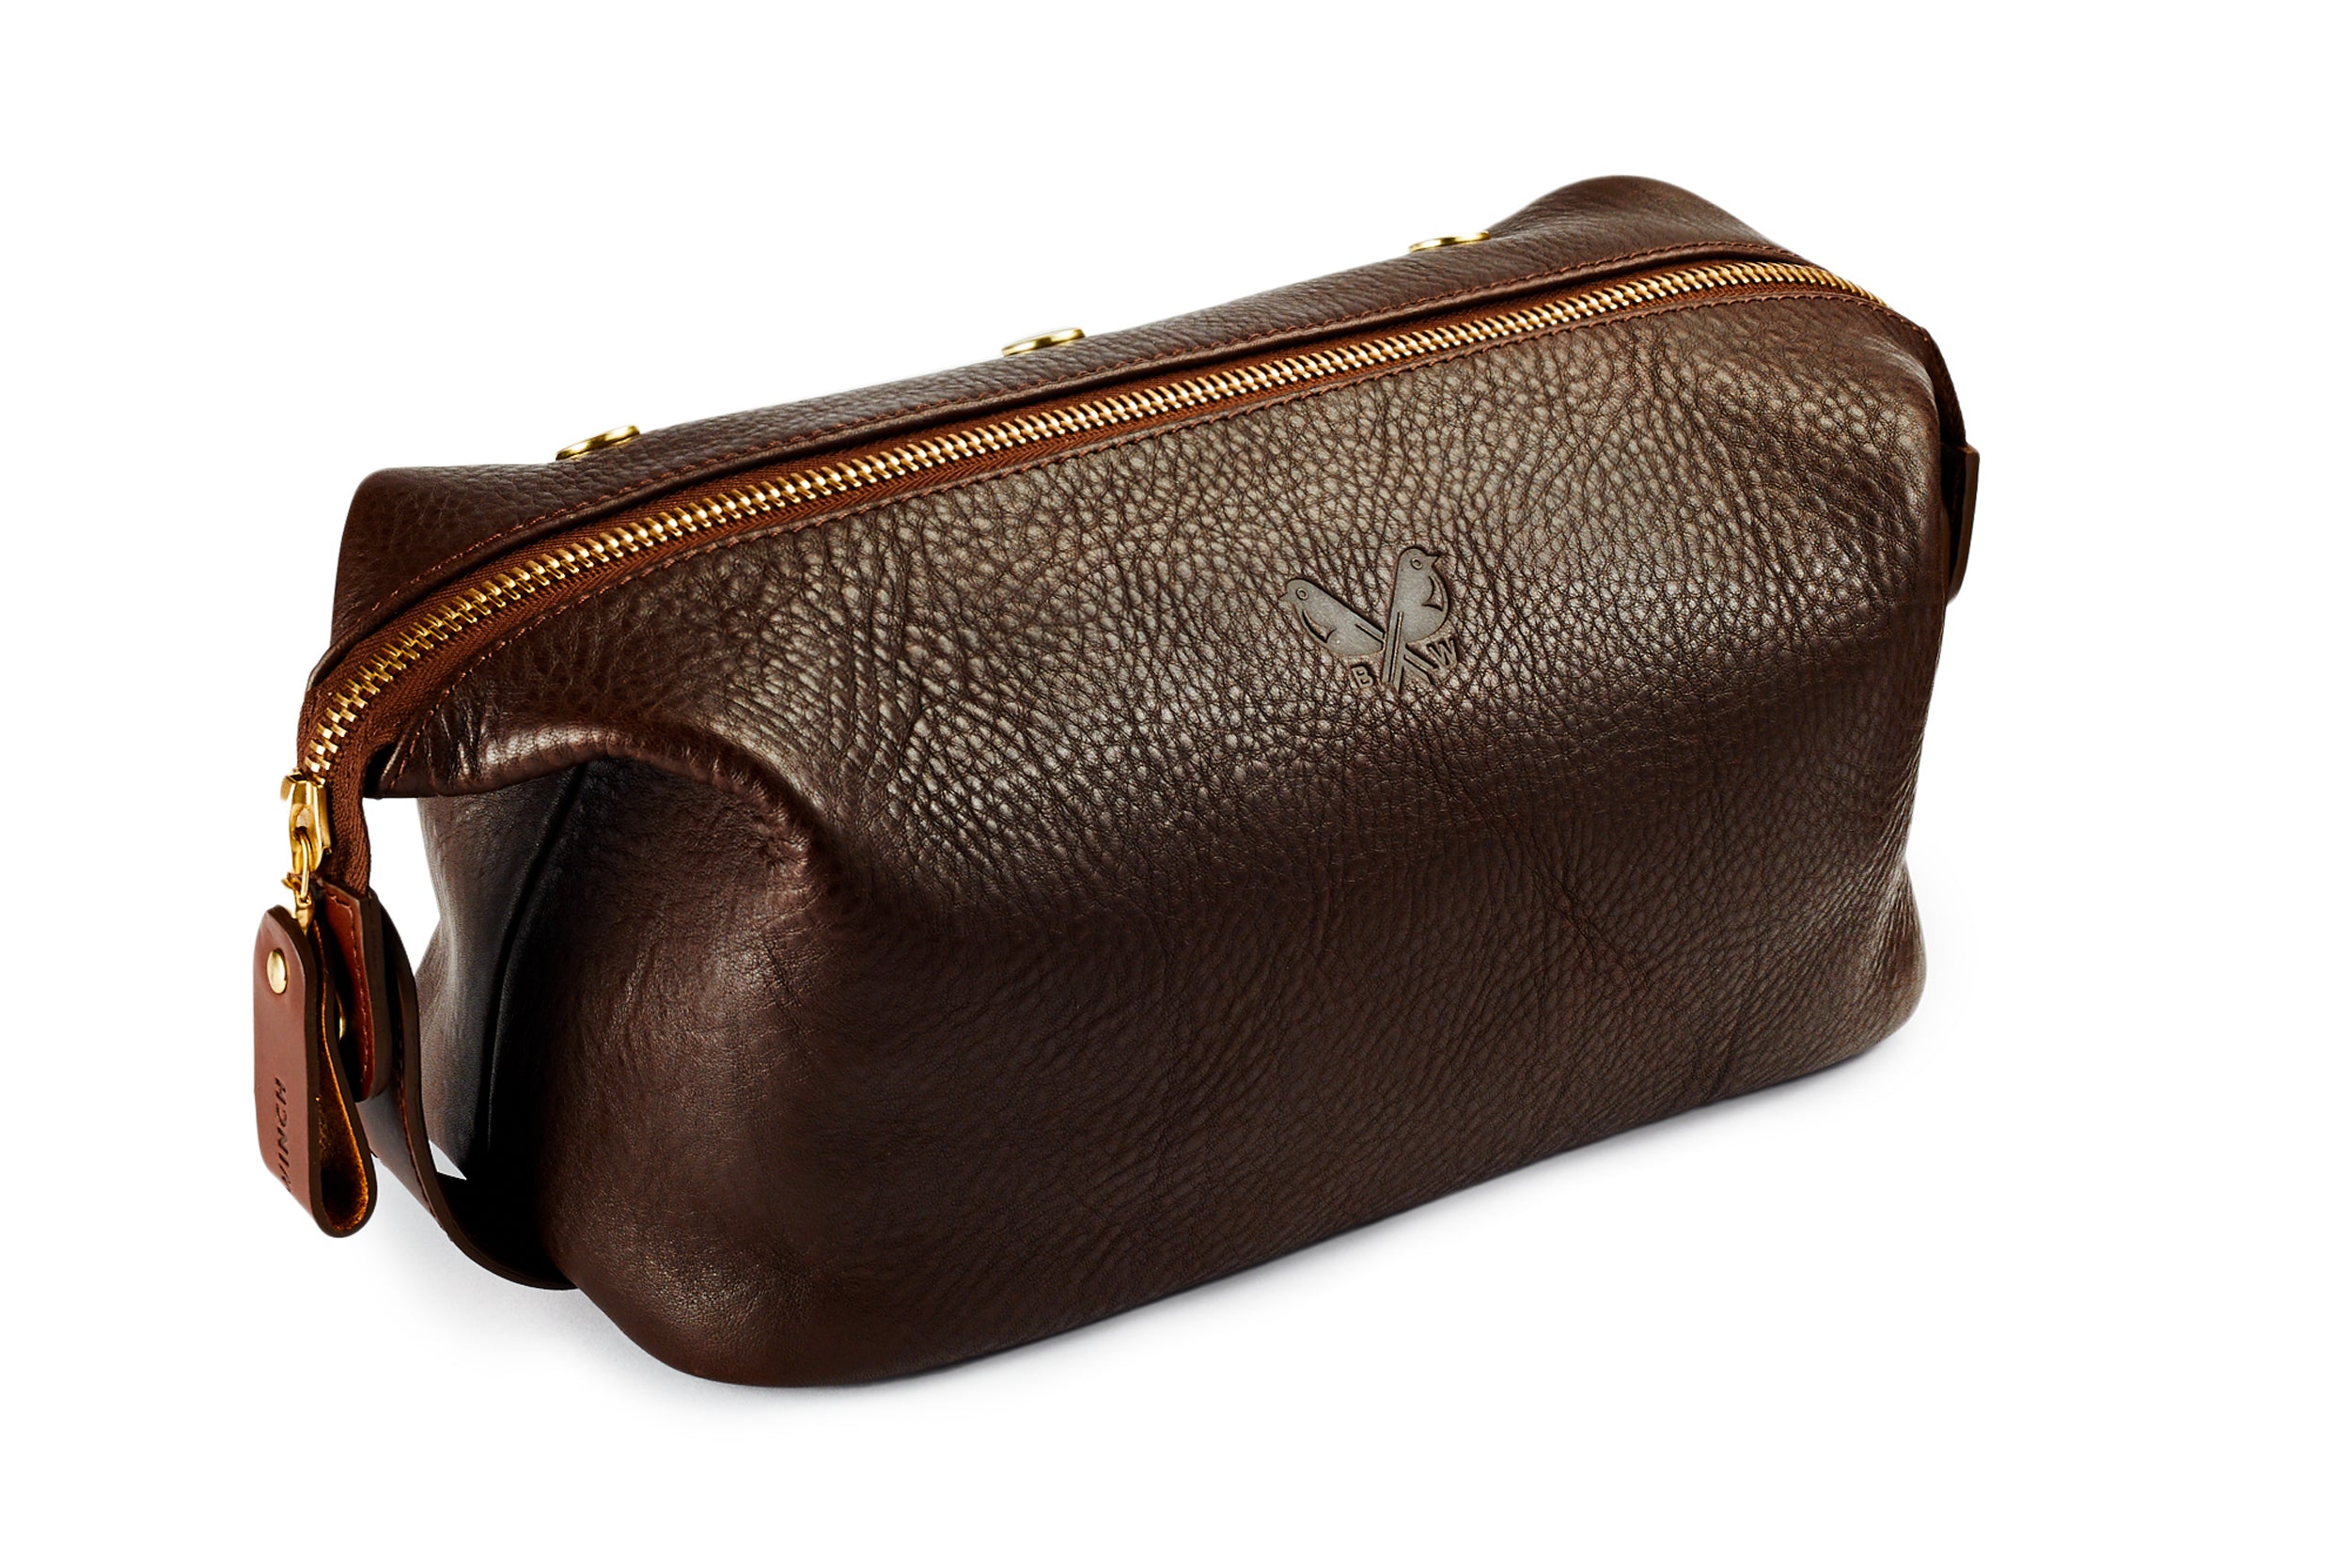 Washbag / Dopp Kit : Brown Leather Wash Bag for Men